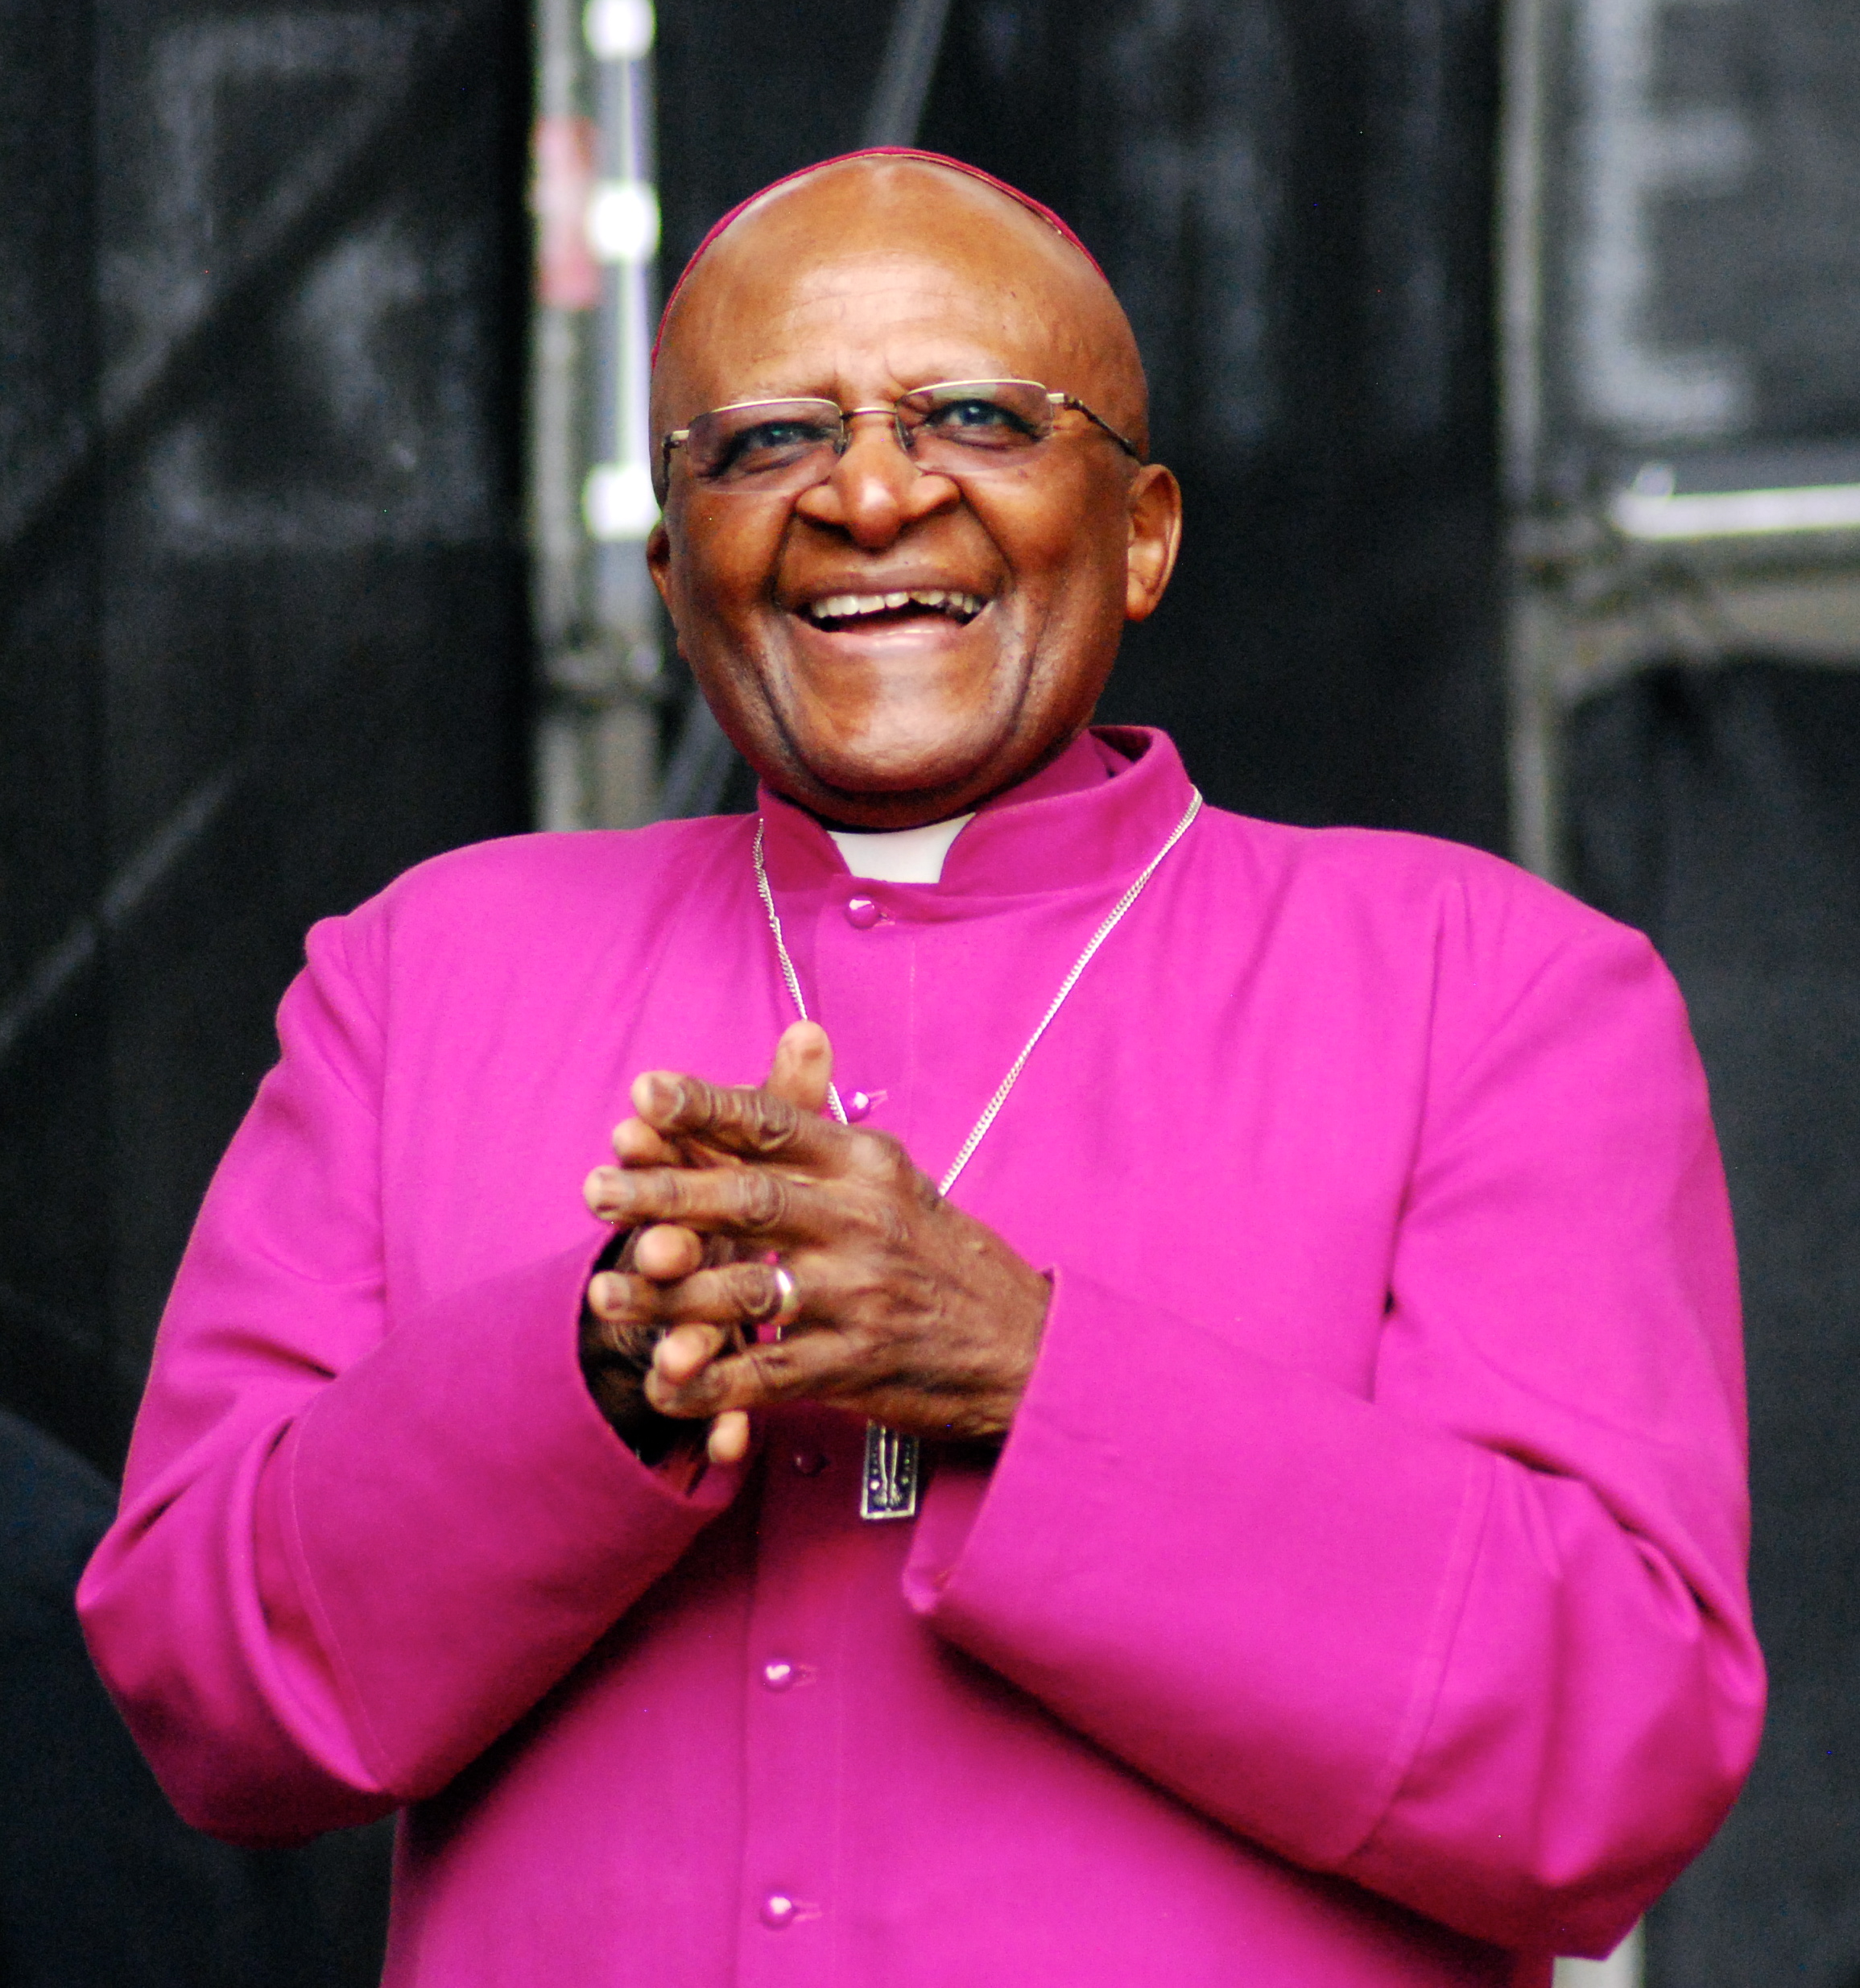 Desmond M. Tutu